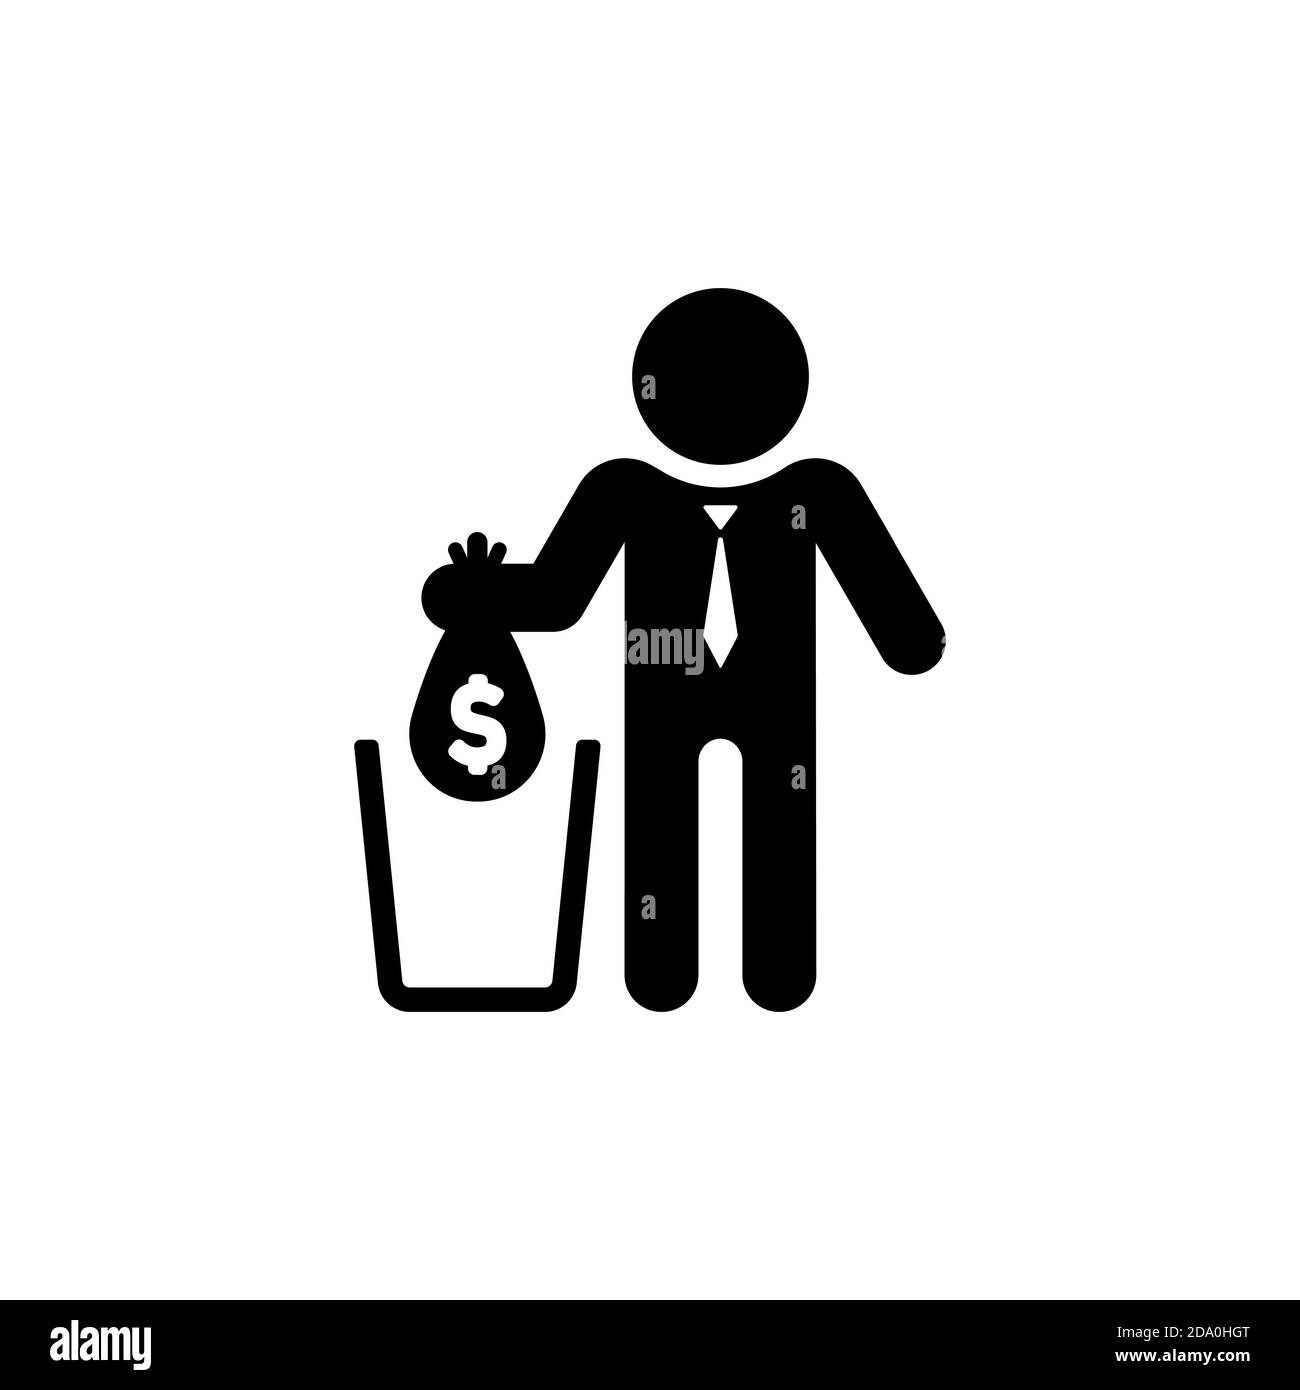 Ne gaspillez pas votre argent. L'homme d'affaires jette de l'argent dans la poubelle. Vecteur sur fond blanc isolé. SPE 10 Illustration de Vecteur